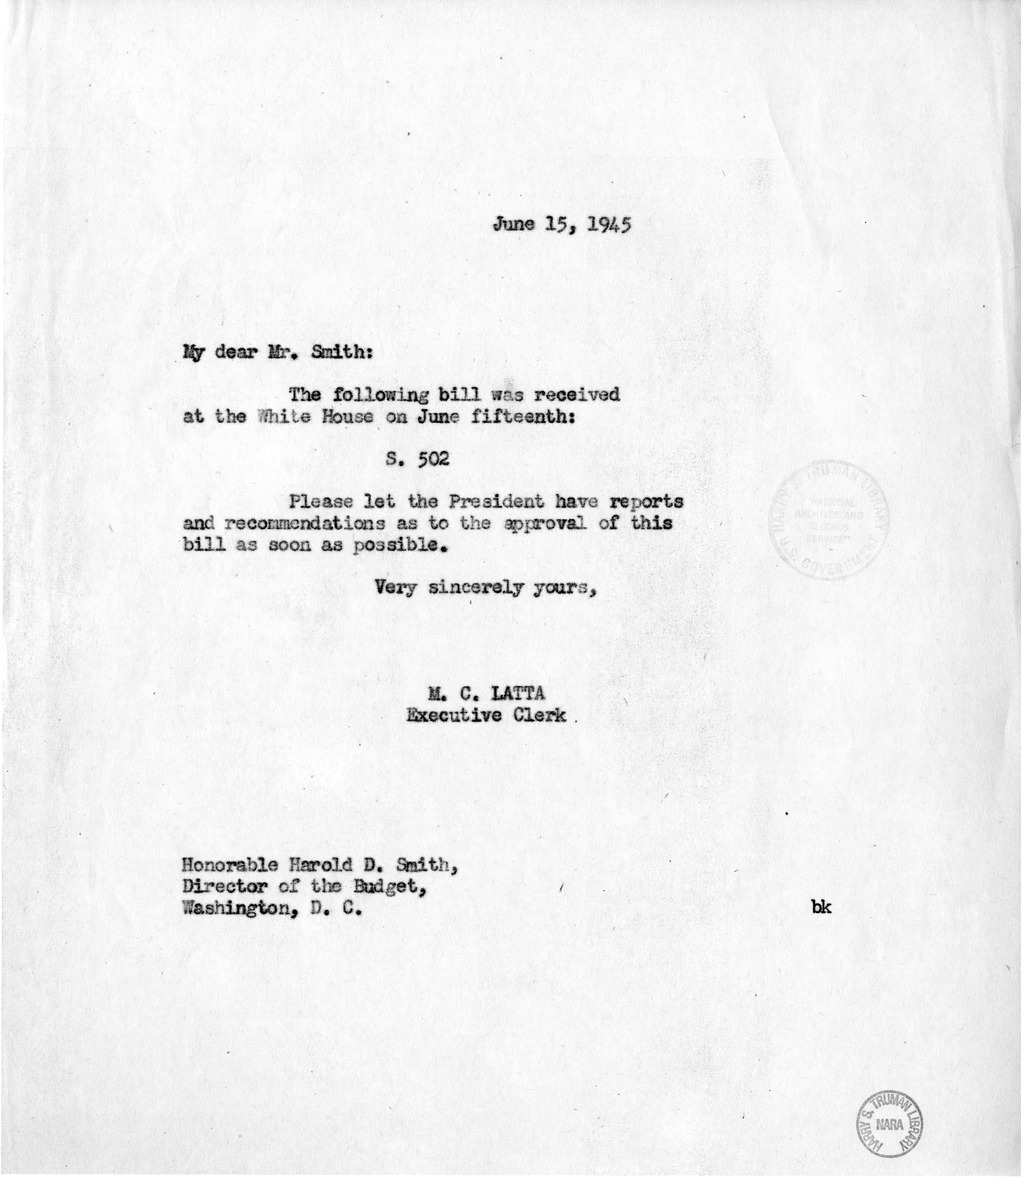 Memorandum from M. C. Latta to Harold Smith